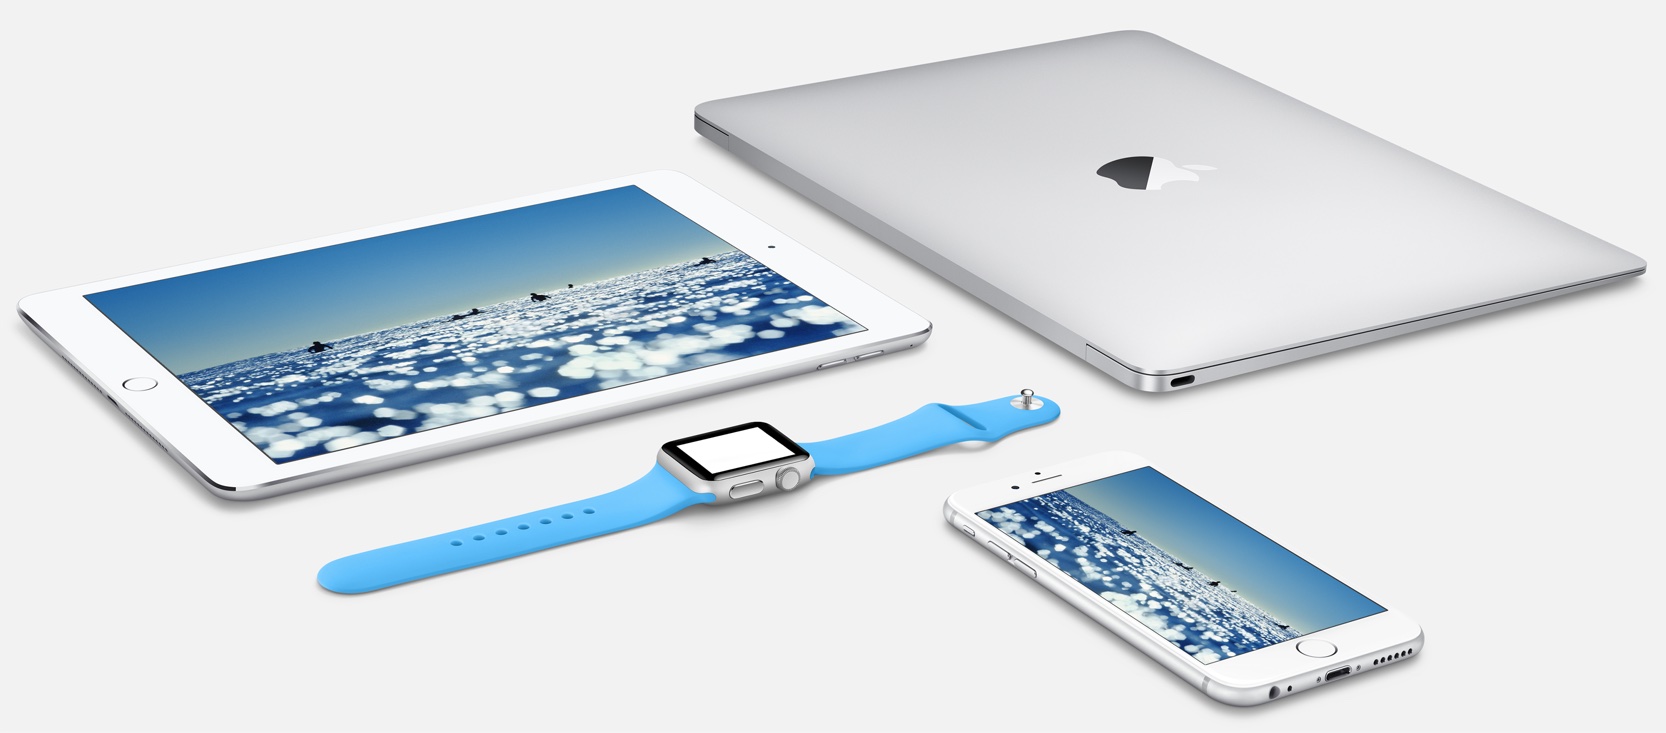 apple-watch-macbook-air-ipad-air-iphone-6-image-001.jpg